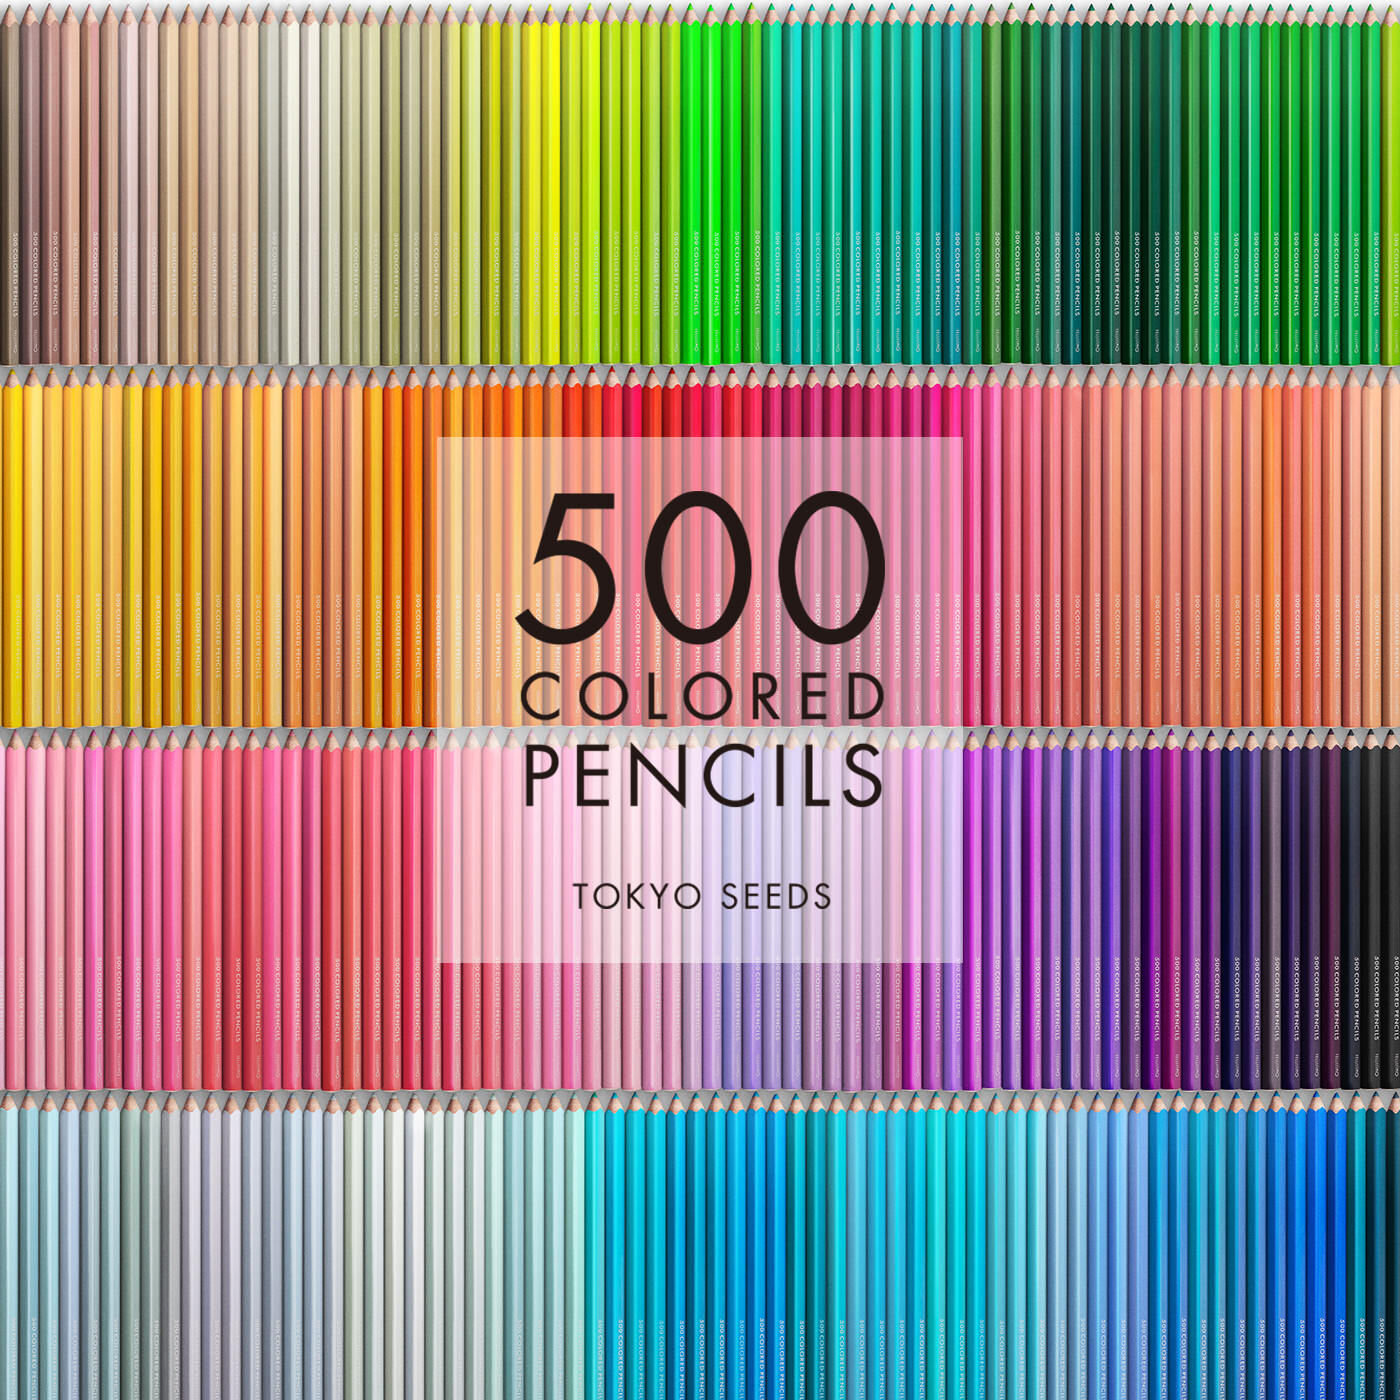 Real Stock|【310/500 SQUIRREL SQUEAK】500色の色えんぴつ TOKYO SEEDS|1992年、世界初の「500色」という膨大な色数の色えんぴつが誕生して以来、その販売数は発売当初から合わせると、世界55ヵ国10万セット以上。今回、メイド・イン・ジャパンにこだわり、すべてが新しく生まれ変わって登場しました。